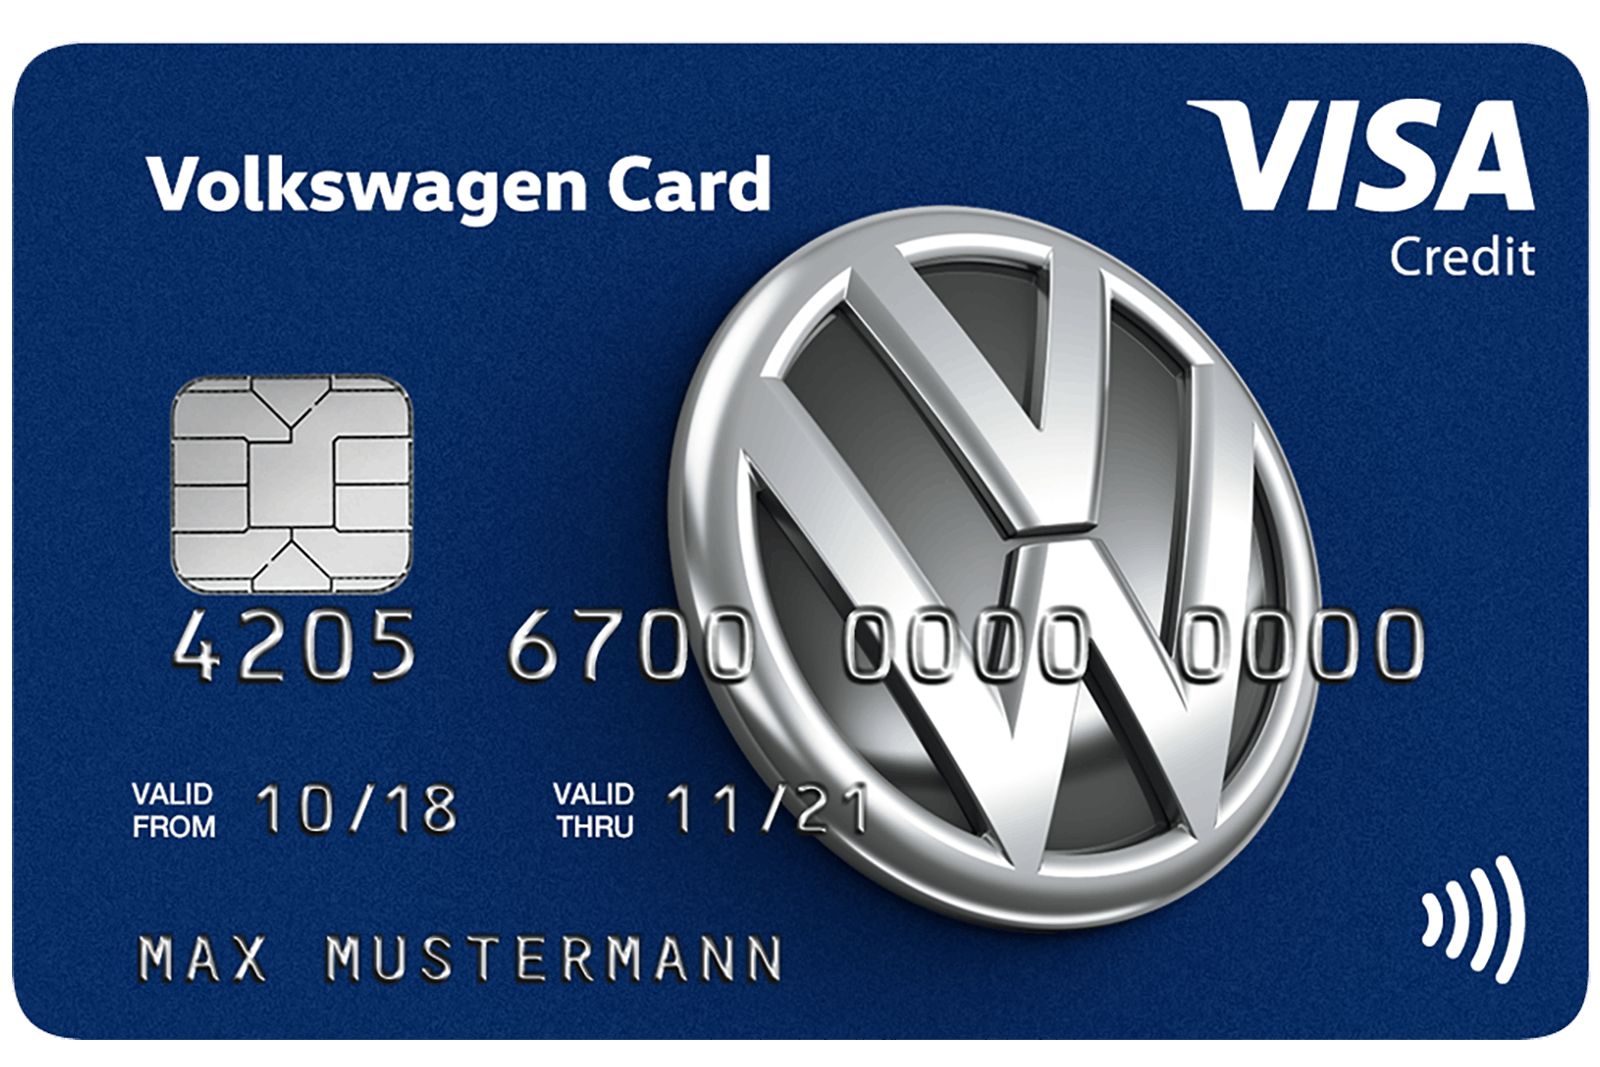 Volkswagen Visa Kreditkarte - Alle Infos Zu Den Konditionen & Zur Beantragung